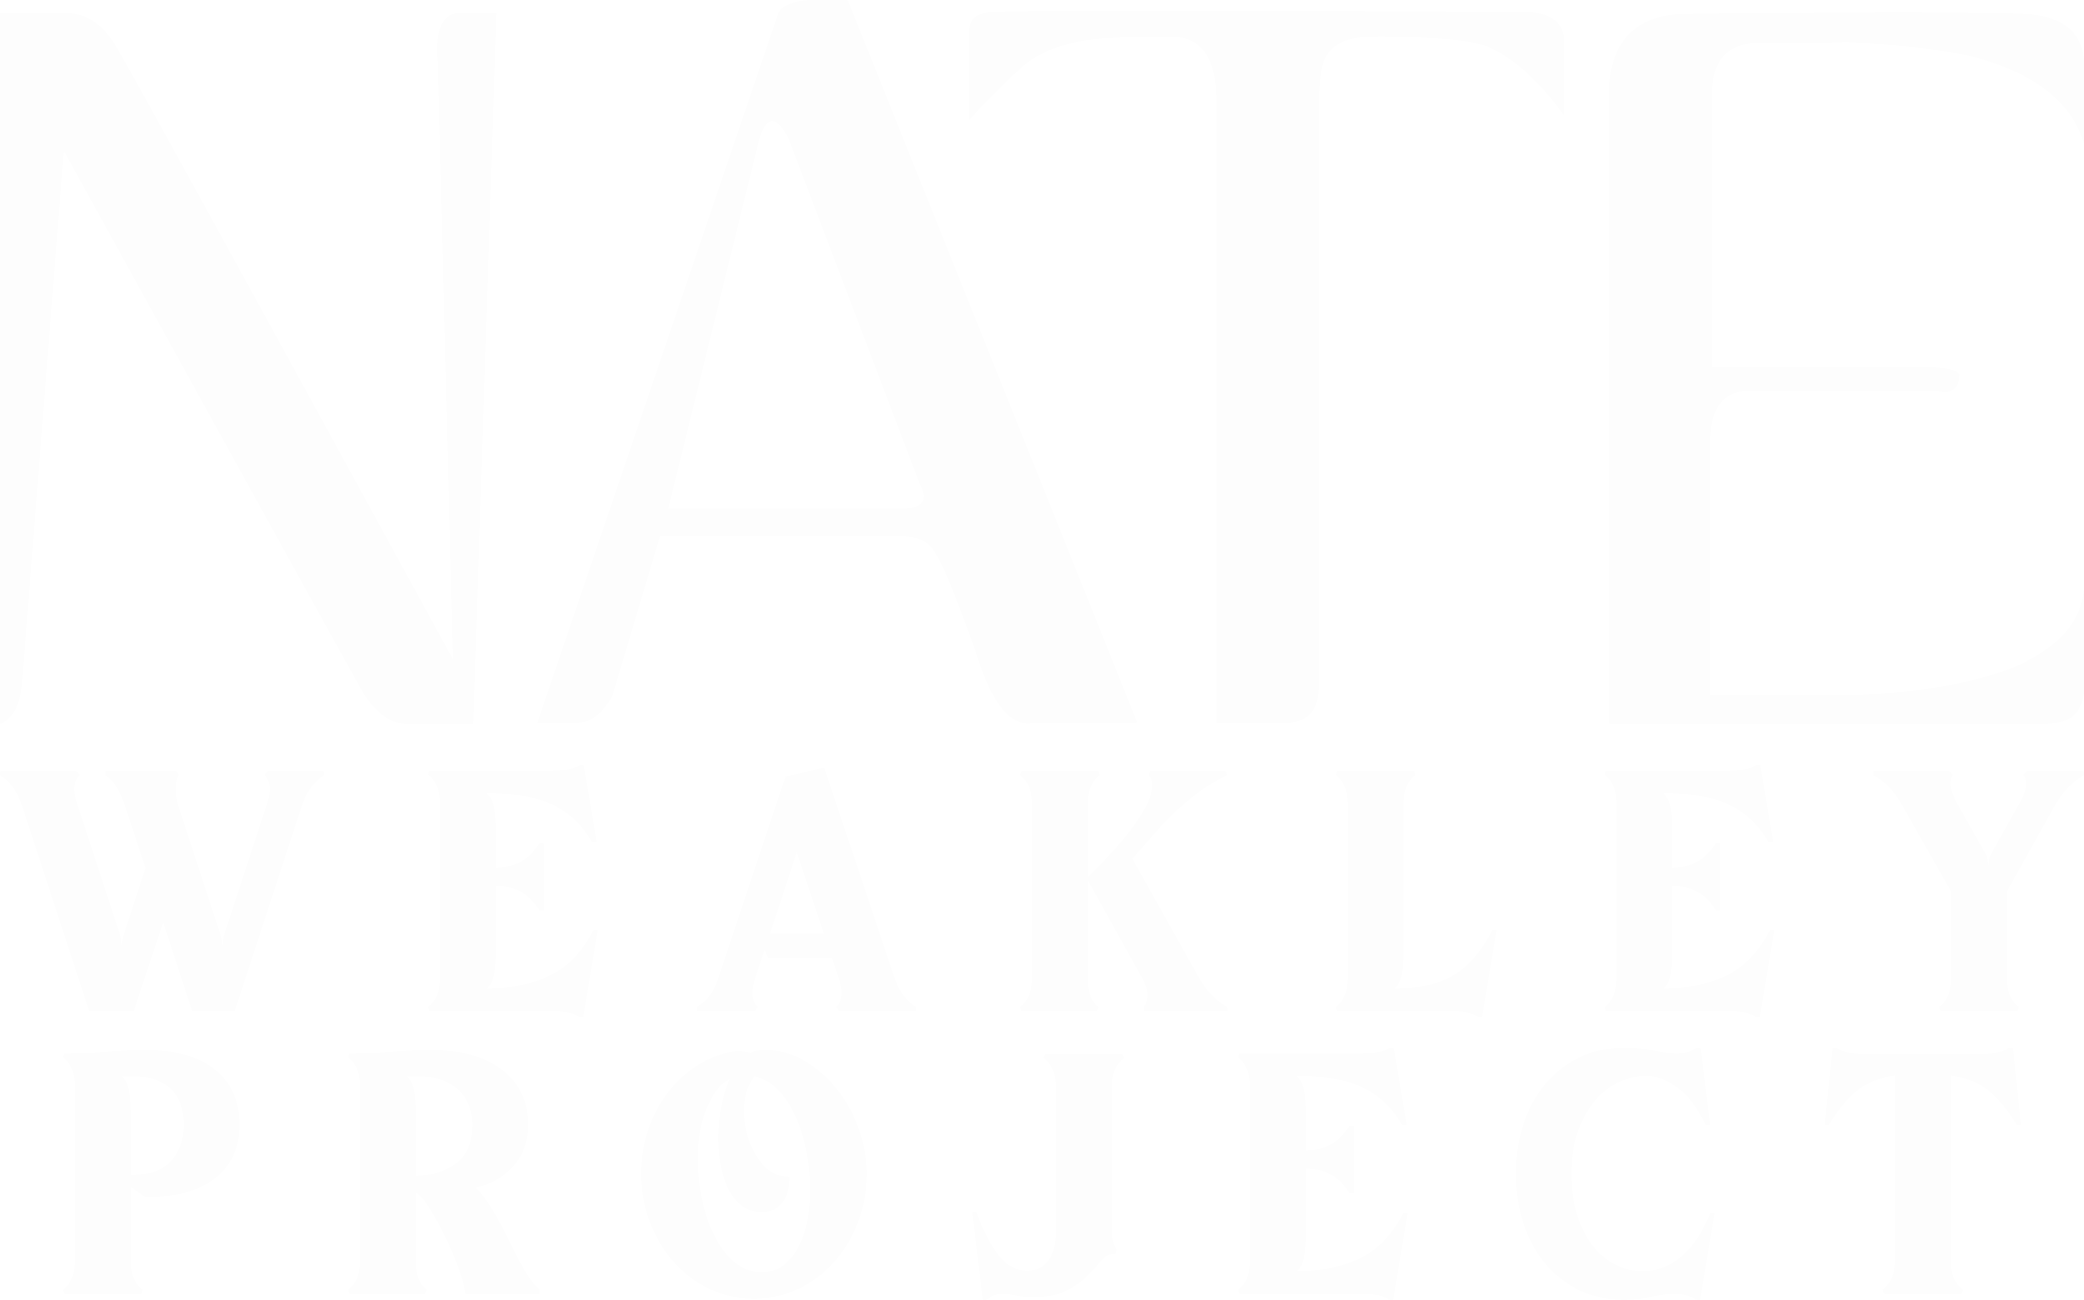 Nate Weakley Project